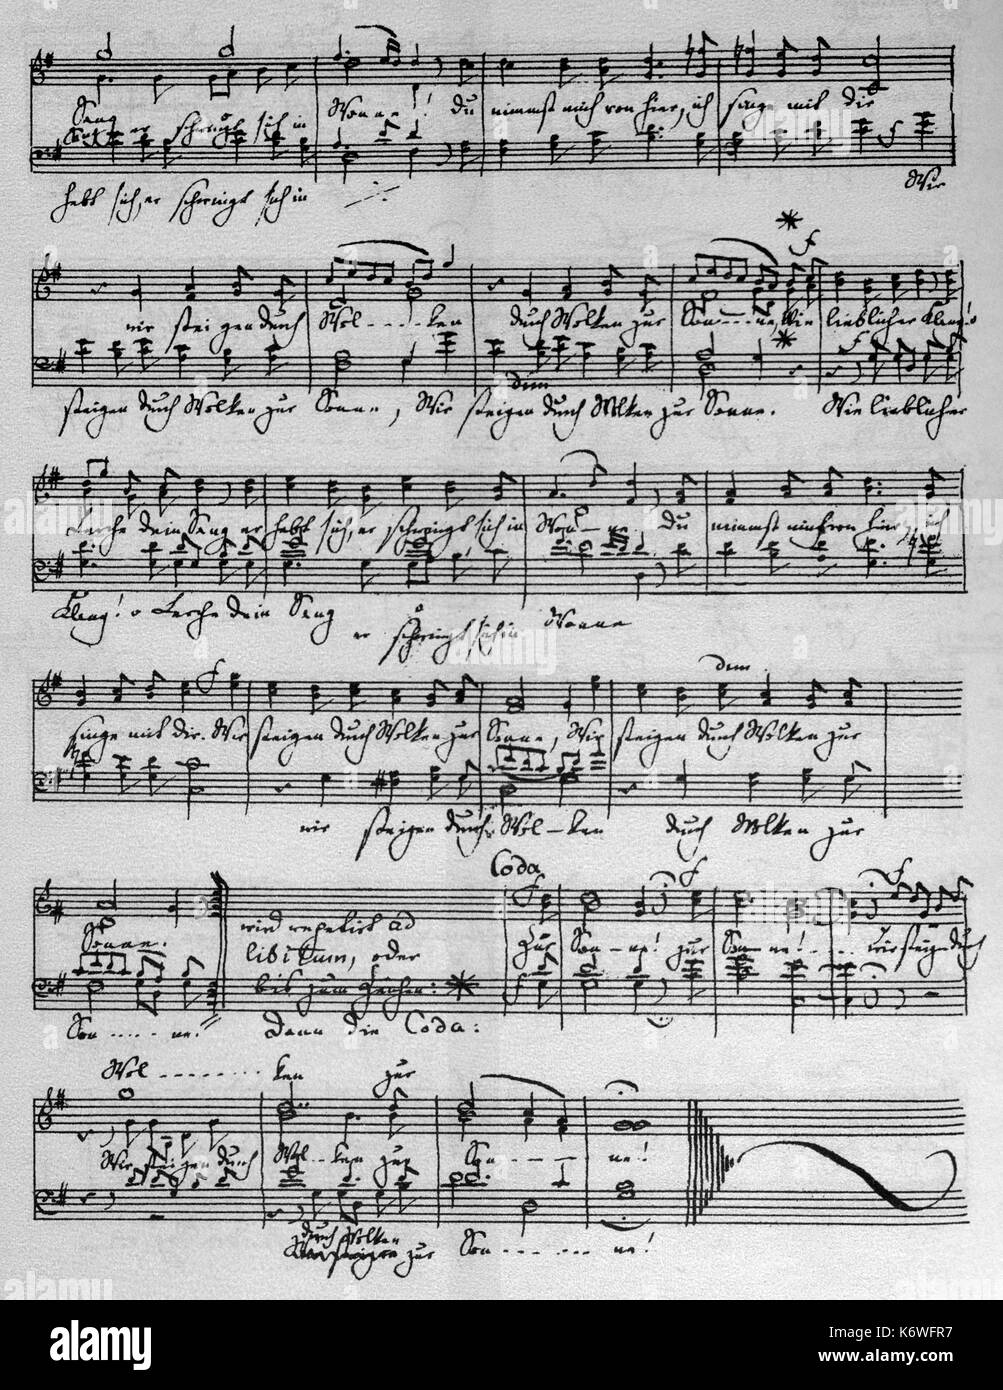 Felix Mendelssohn 's 6 Lieder Ohne worte, Op 30 - Puntuación de autógrafos no.1, Andante espressivo para pianoforte (1829). Compositor alemán, el 3 de febrero de 1809 - 4 de noviembre de 1847. Canciones sin palabras. Foto de stock